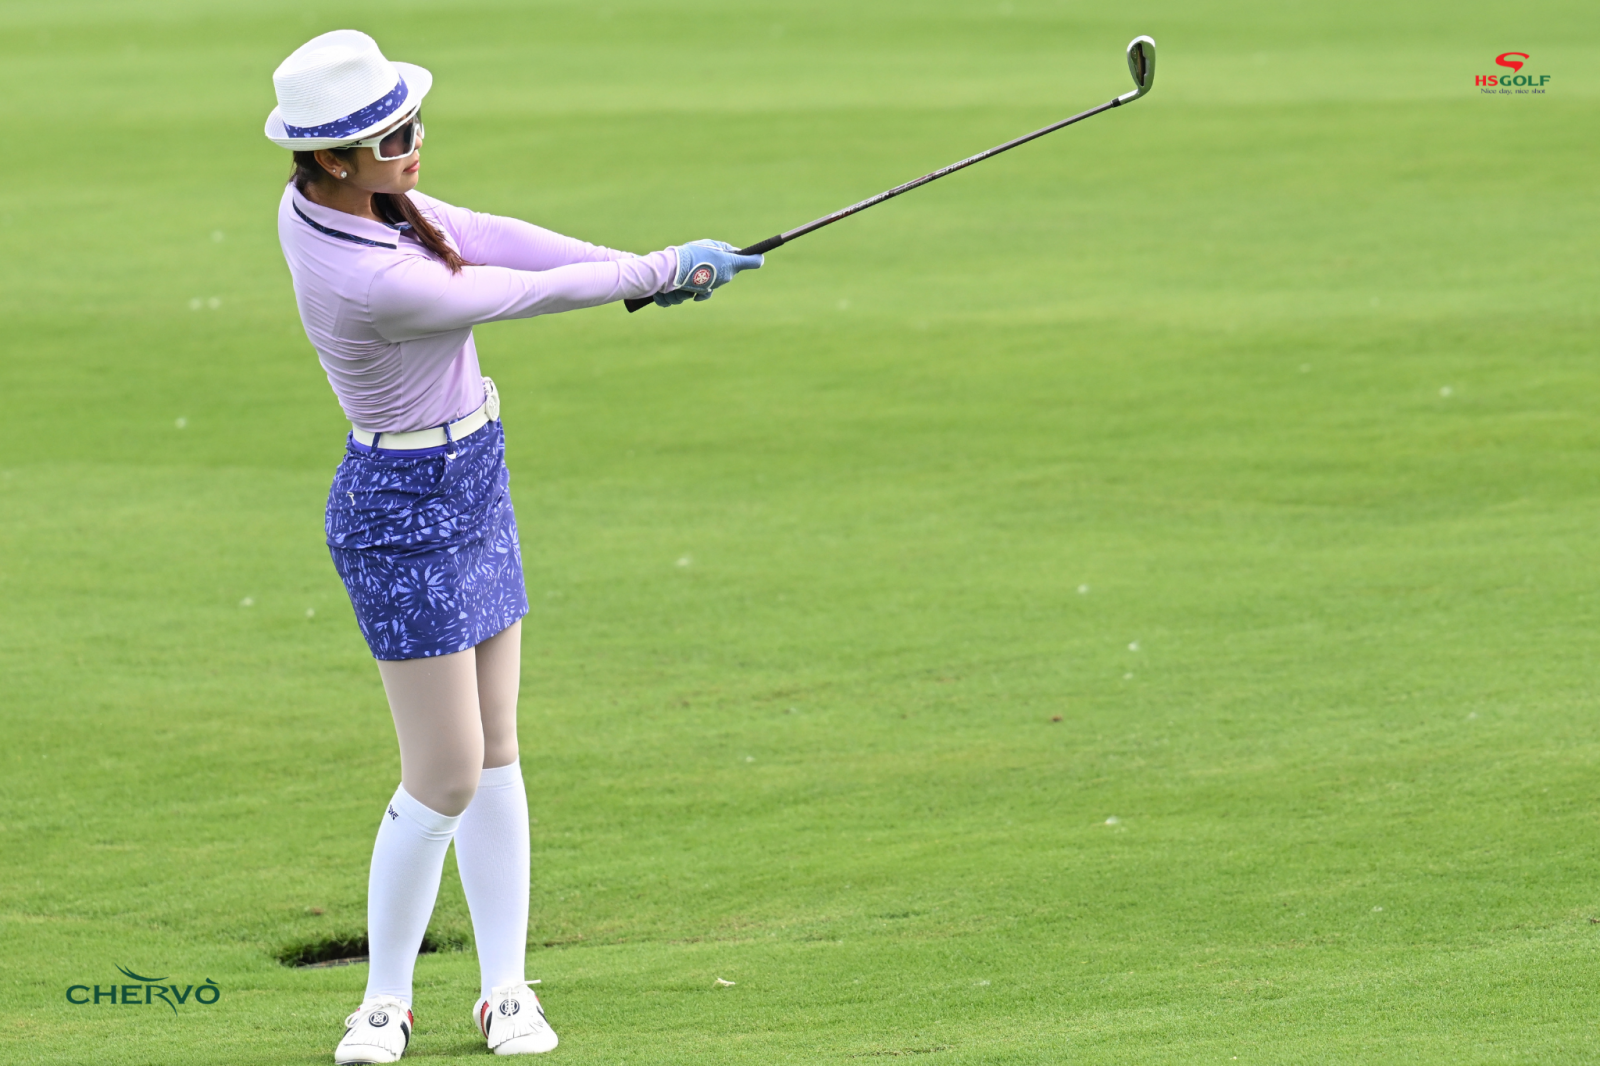 Tiêu chuẩn của trang phục chơi golf chuyên nghiệp (P1)